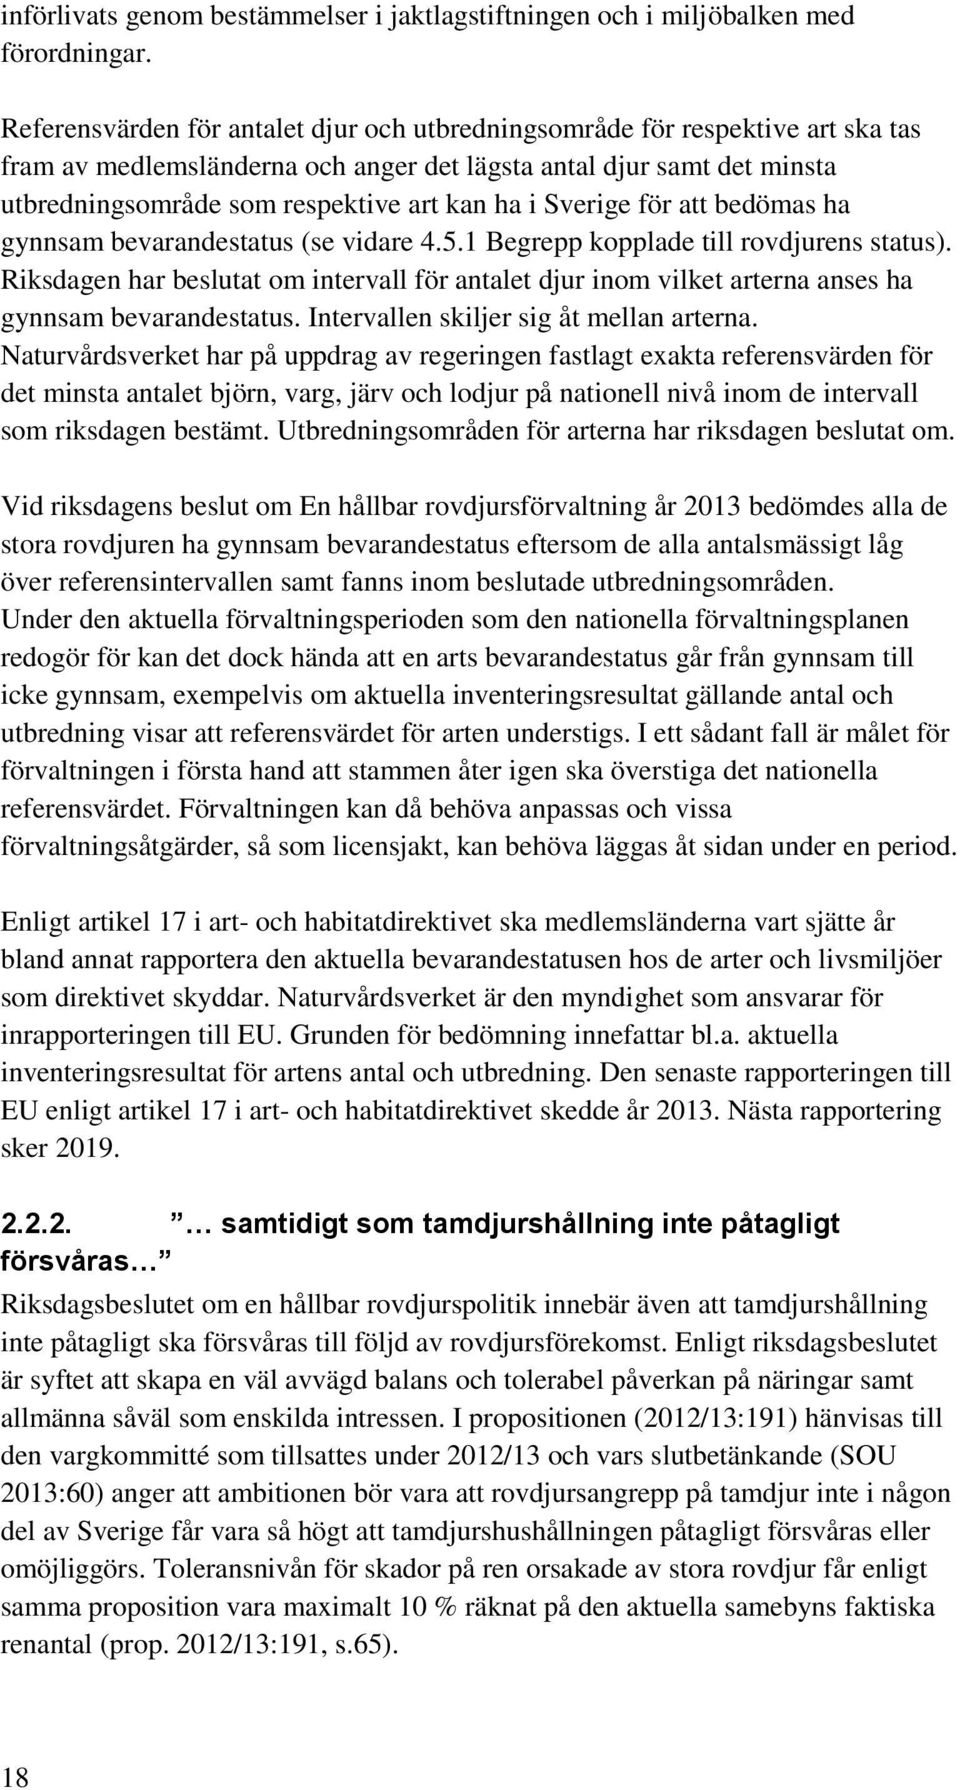 Sverige för att bedömas ha gynnsam bevarandestatus (se vidare 4.5.1 Begrepp kopplade till rovdjurens status).